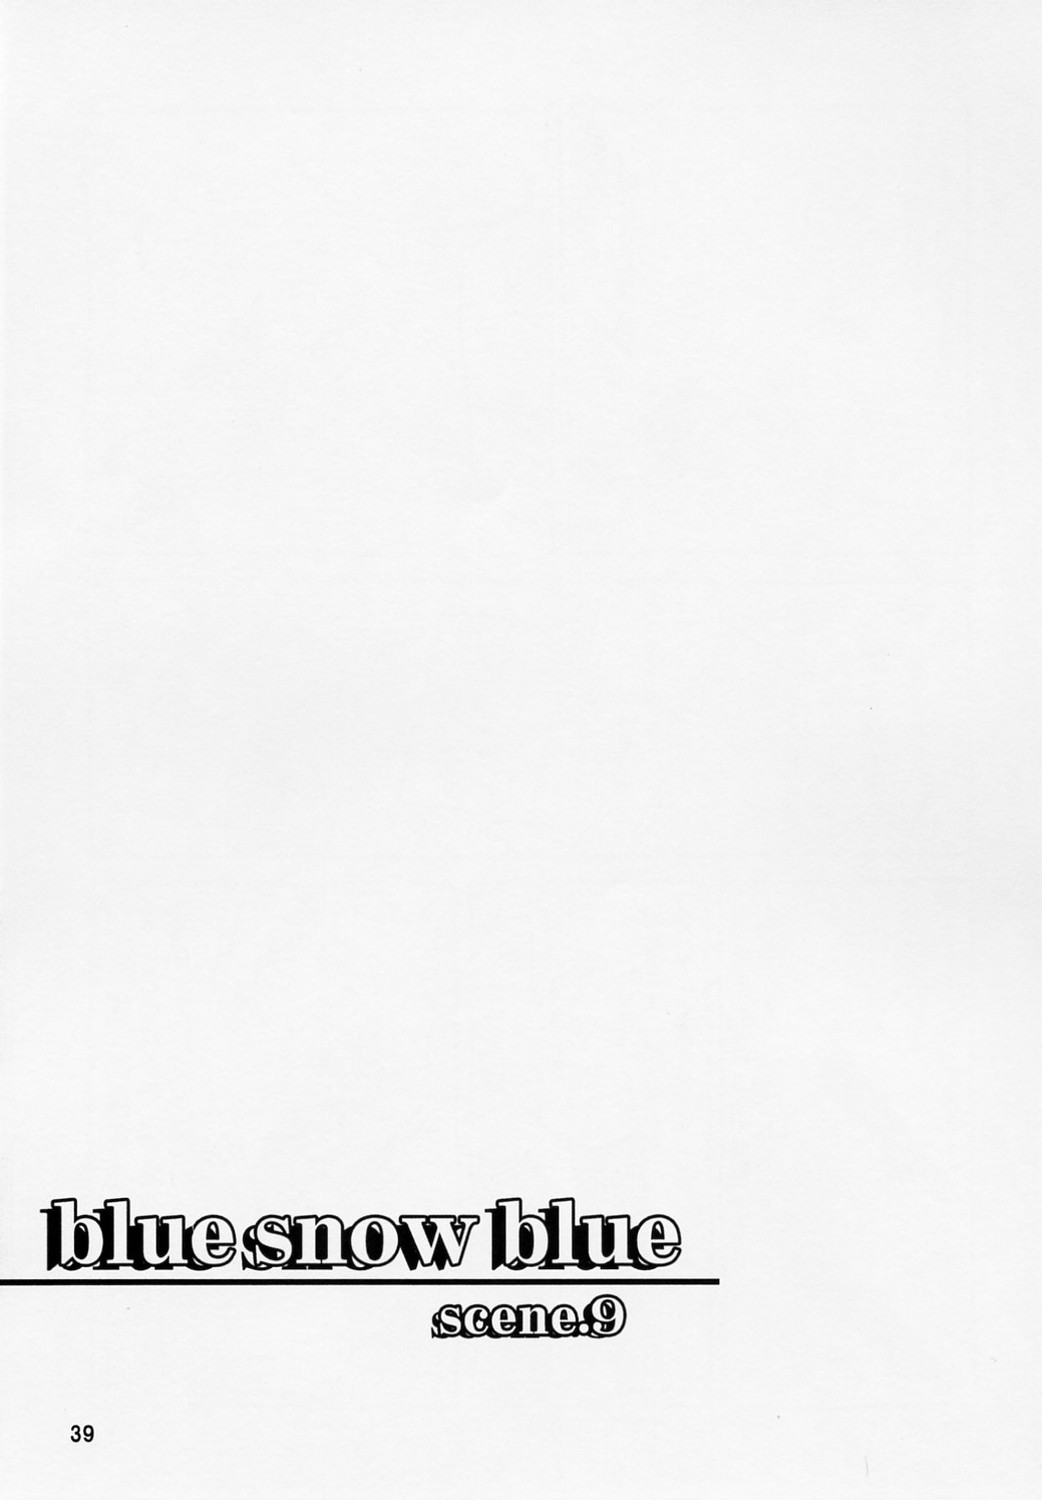 [わくわく動物園 (天王寺きつね)] blue snow blue scene.9